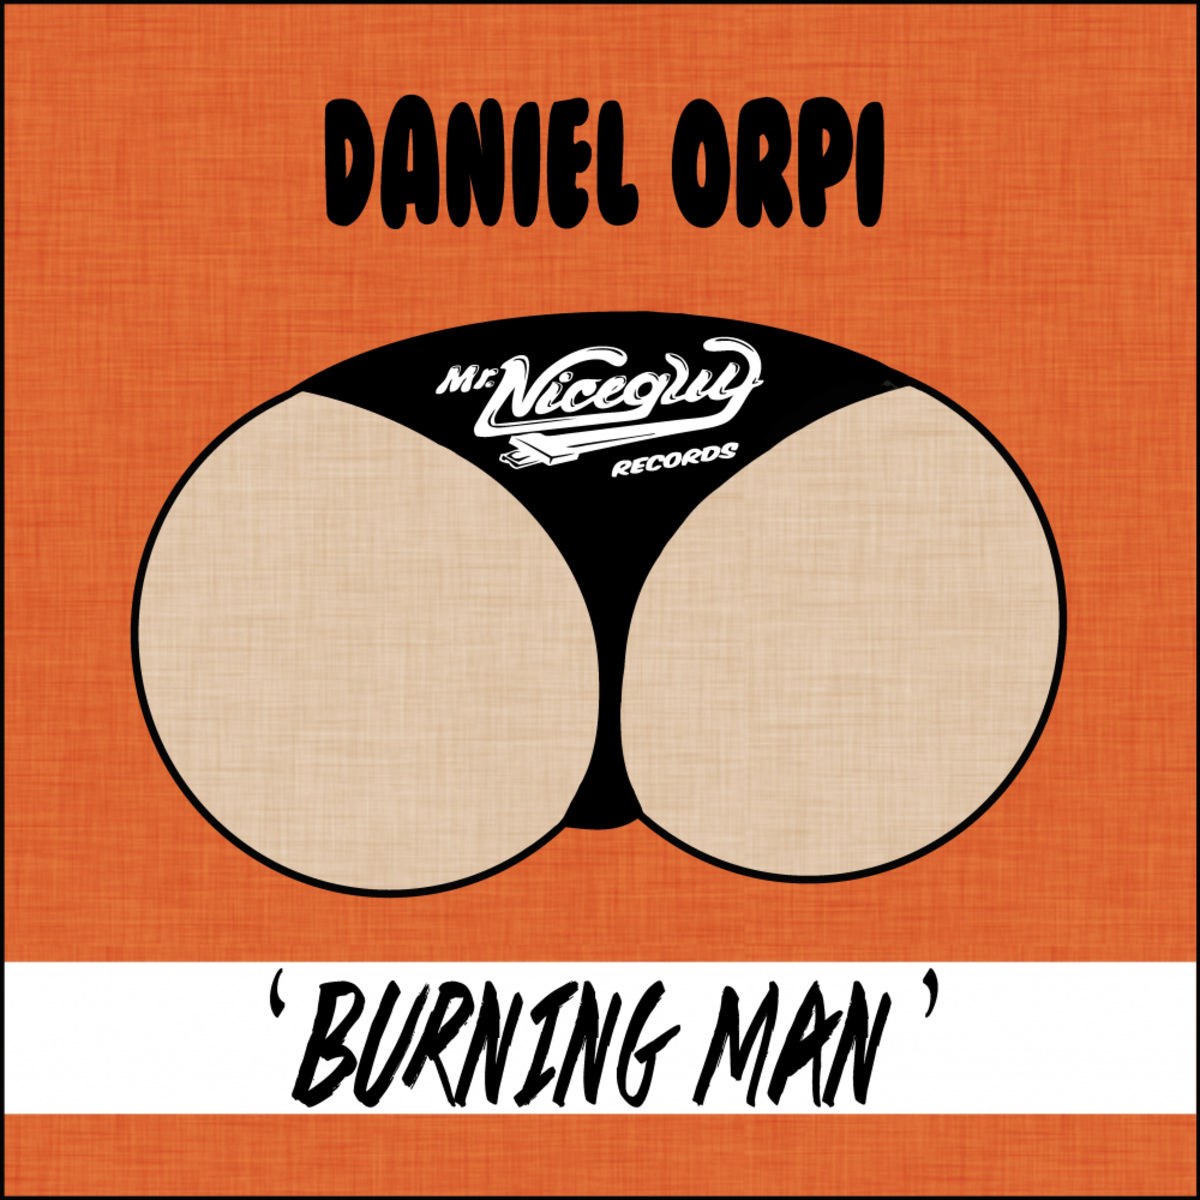 Daniel Orpi - Burning Man EP / Mr. Nice Guy